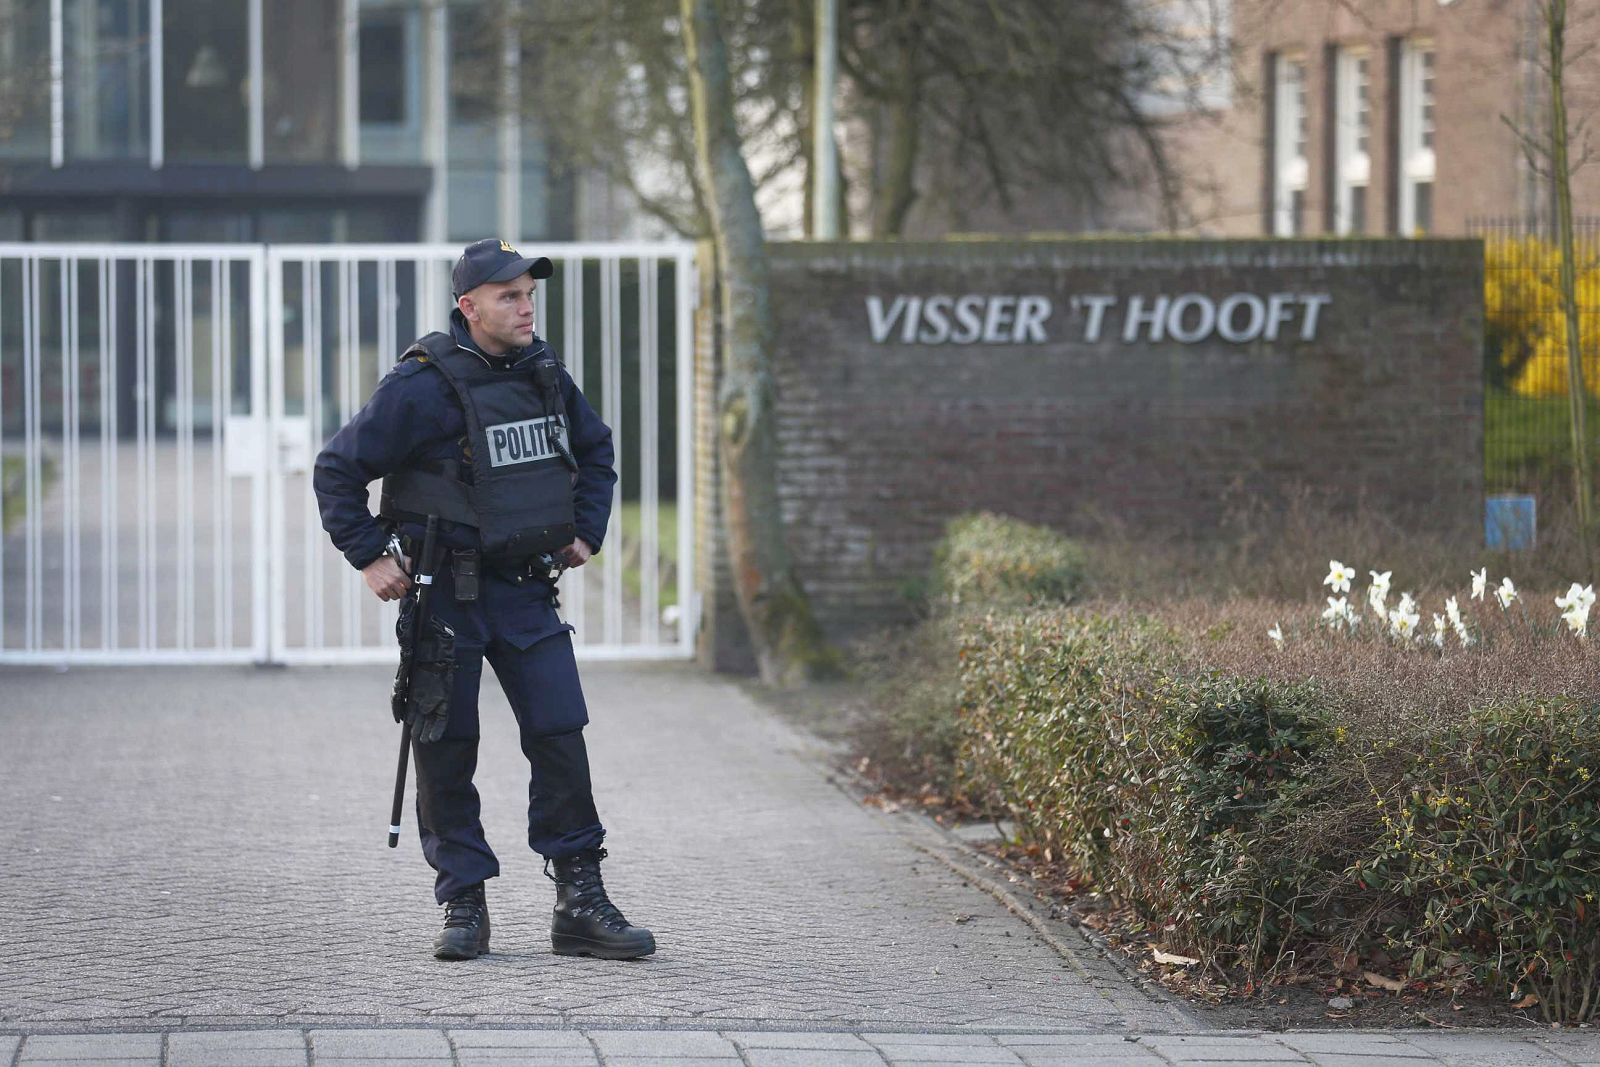 Un policía monta guardia ante el instituto Visser t Hooft de Leiden, tras un aviso de un posible tiroteo